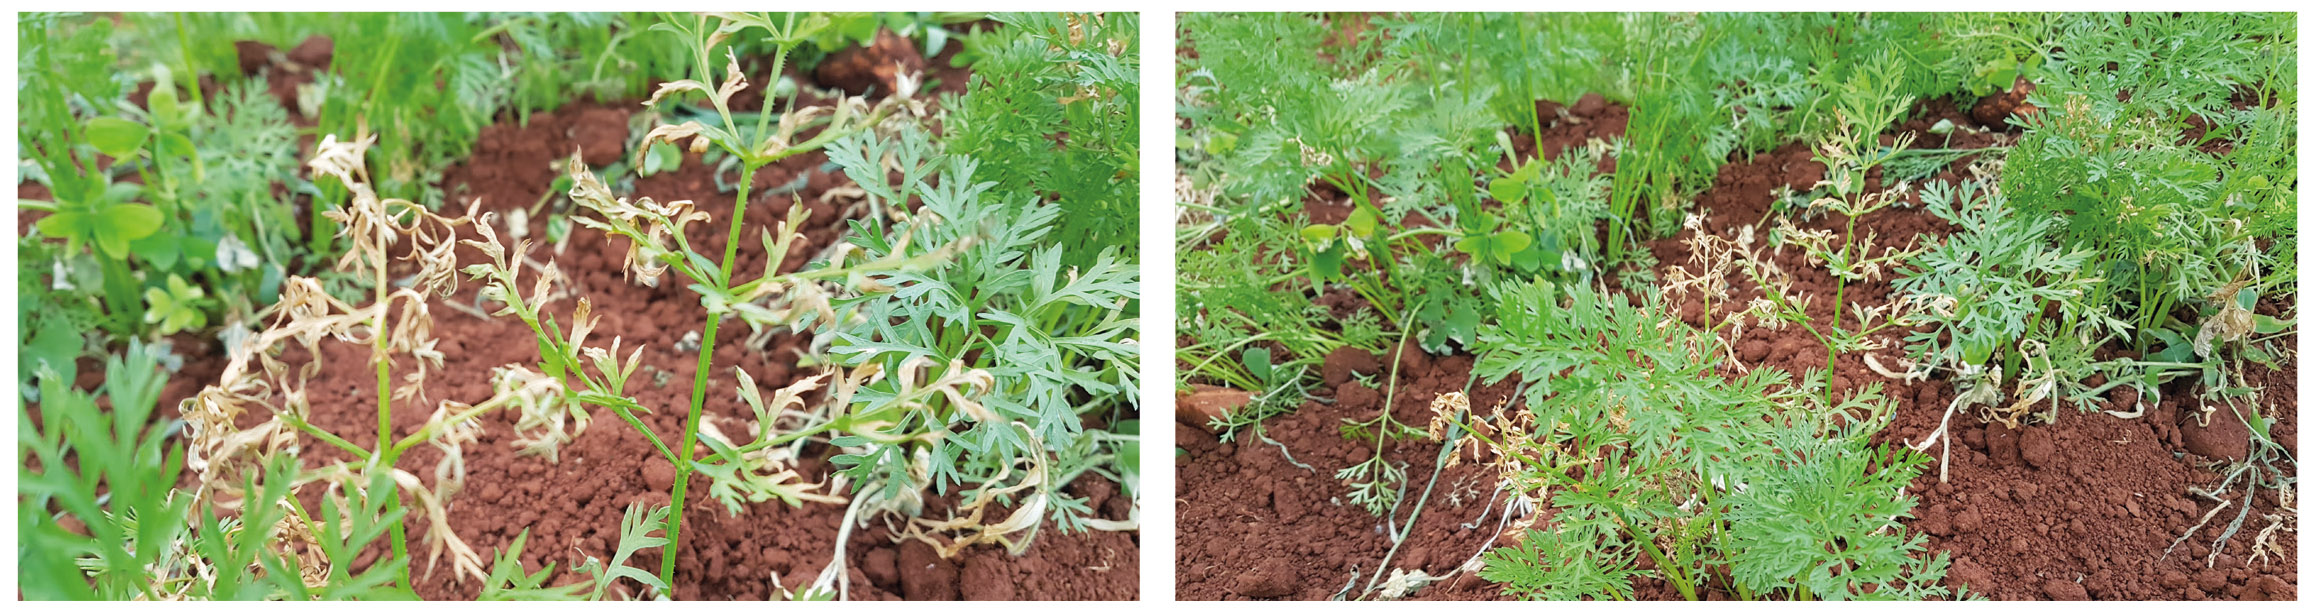 Figura 6 - Plantas de cenoura apresentam sintomas de fitotoxicidade (necrose) ocasionada por aplicação de metribuzin à folhagem das plantas, herbicida que não possui registro para uso nesta cultura.